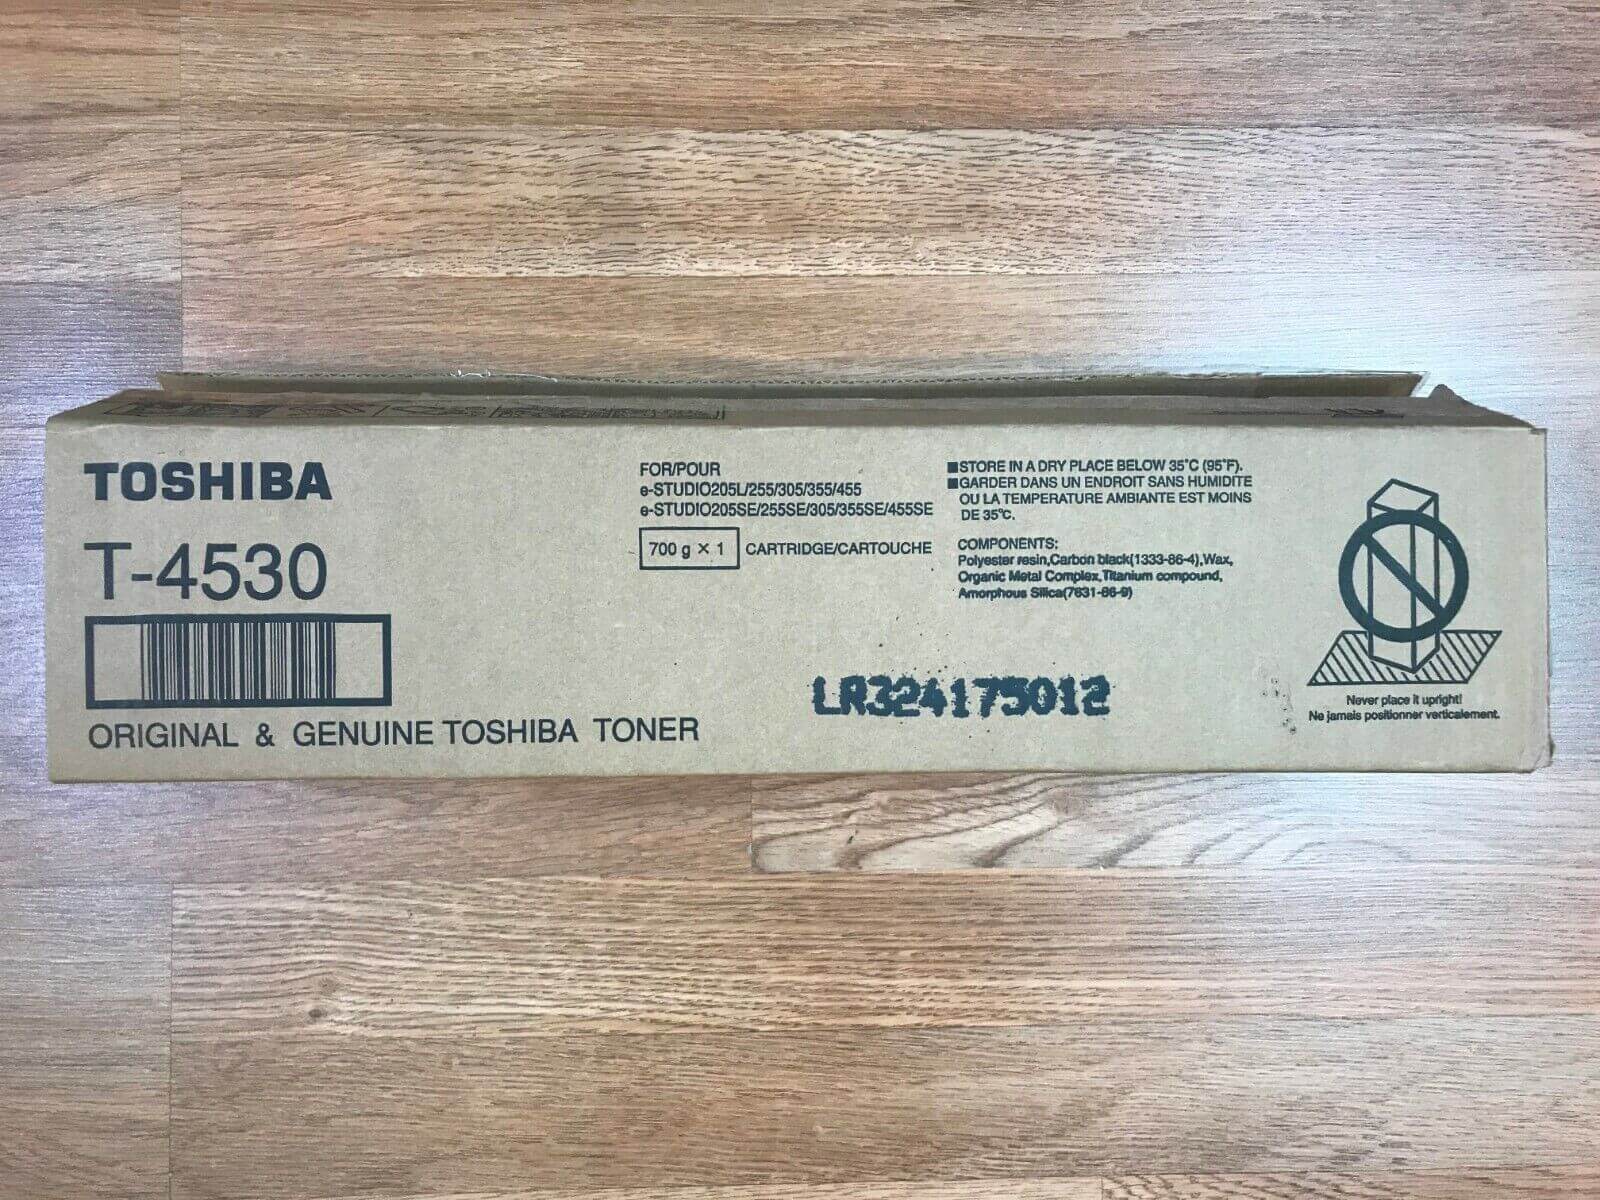 Open Box Toshiba T-4530 Toner e-Studio 205L,255,305,355,455,205SE Same Day Ship! - copier-clearance-center